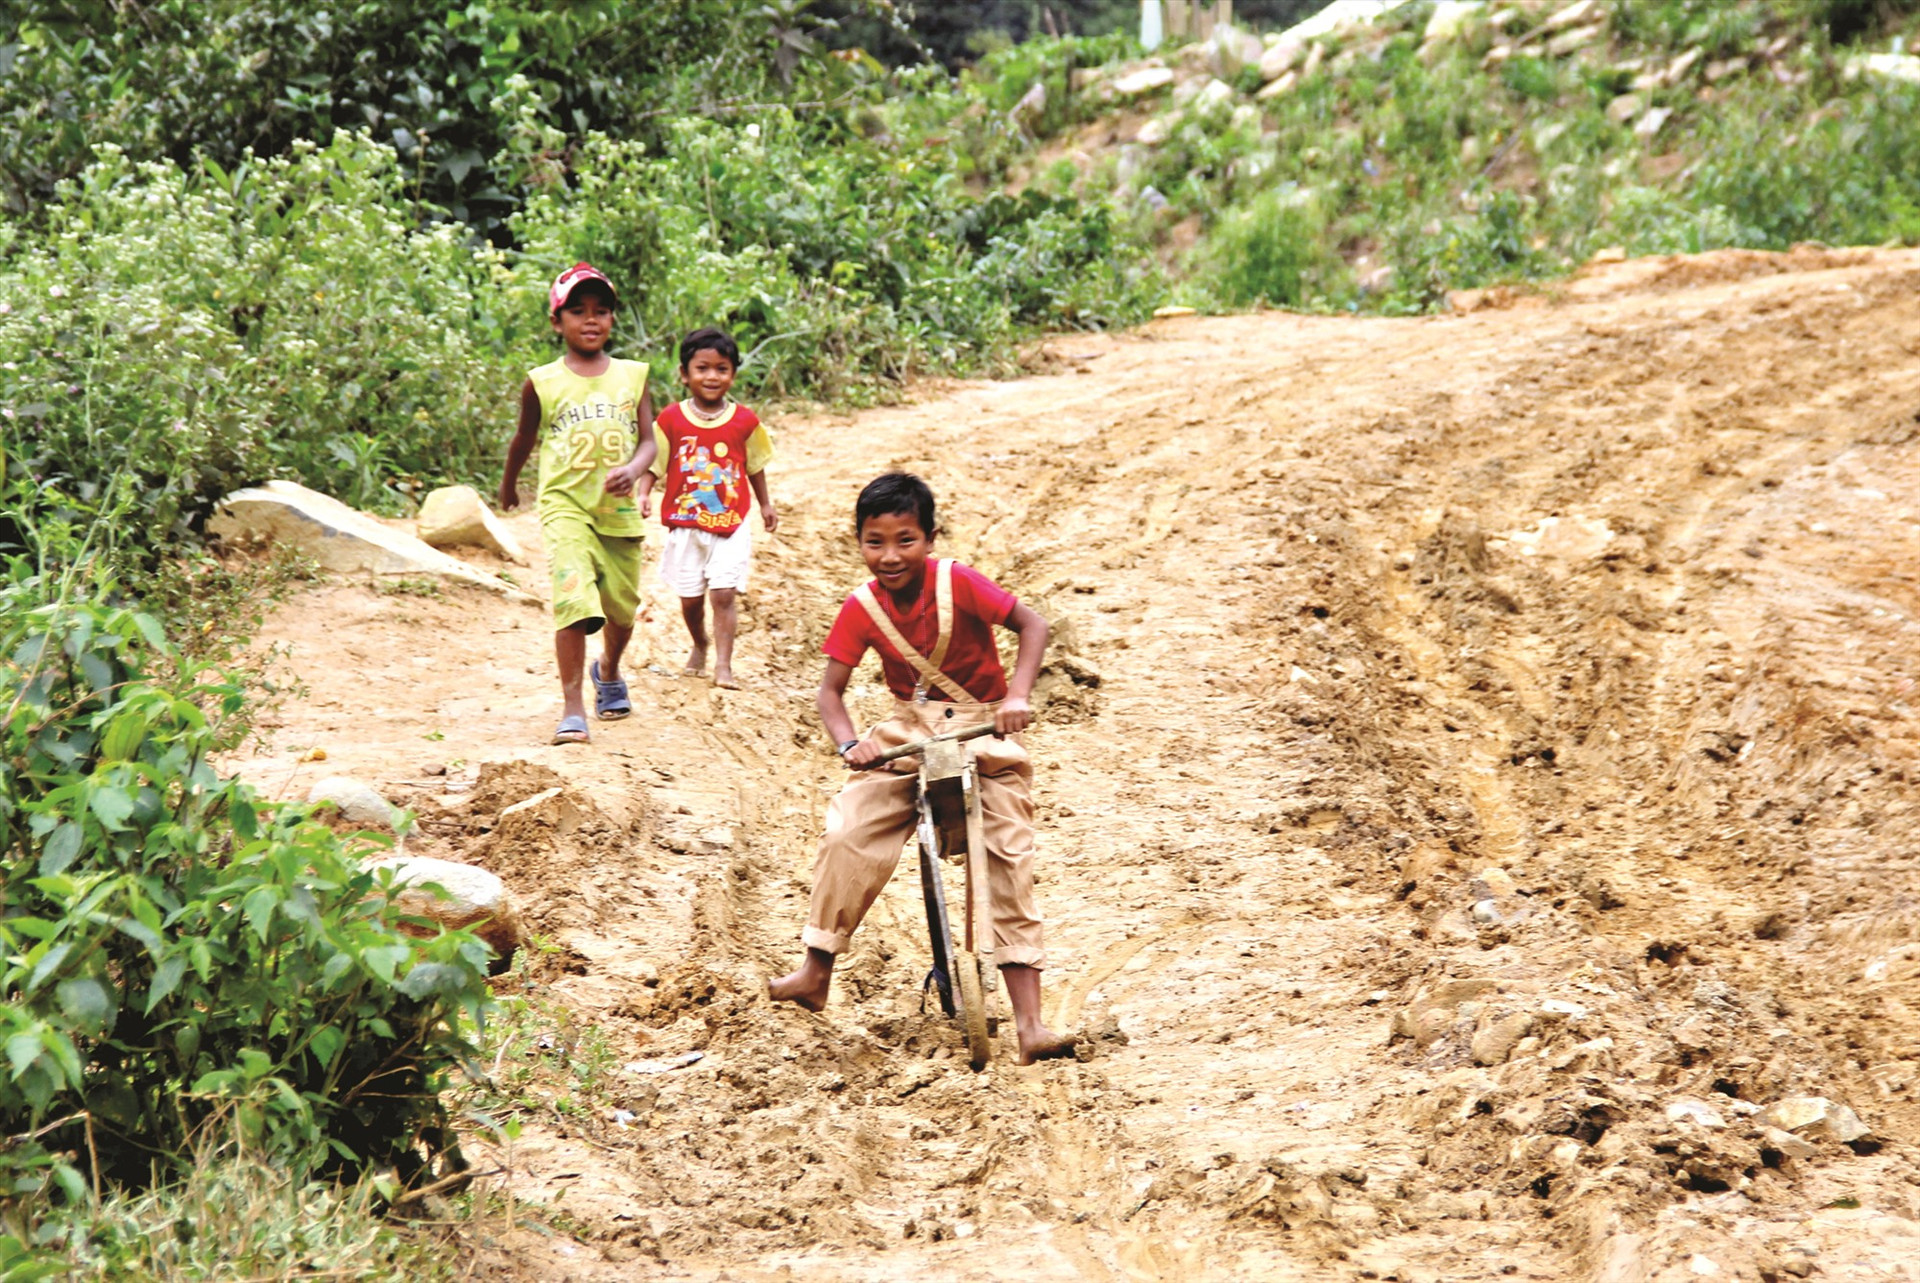 Những đứa trẻ vùng cao dùng chiếc xe gỗ tự chế để chơi. Trên con đường đầy bùn đất, bánh xe trượt lăn theo tiếng cười thỏa thích.